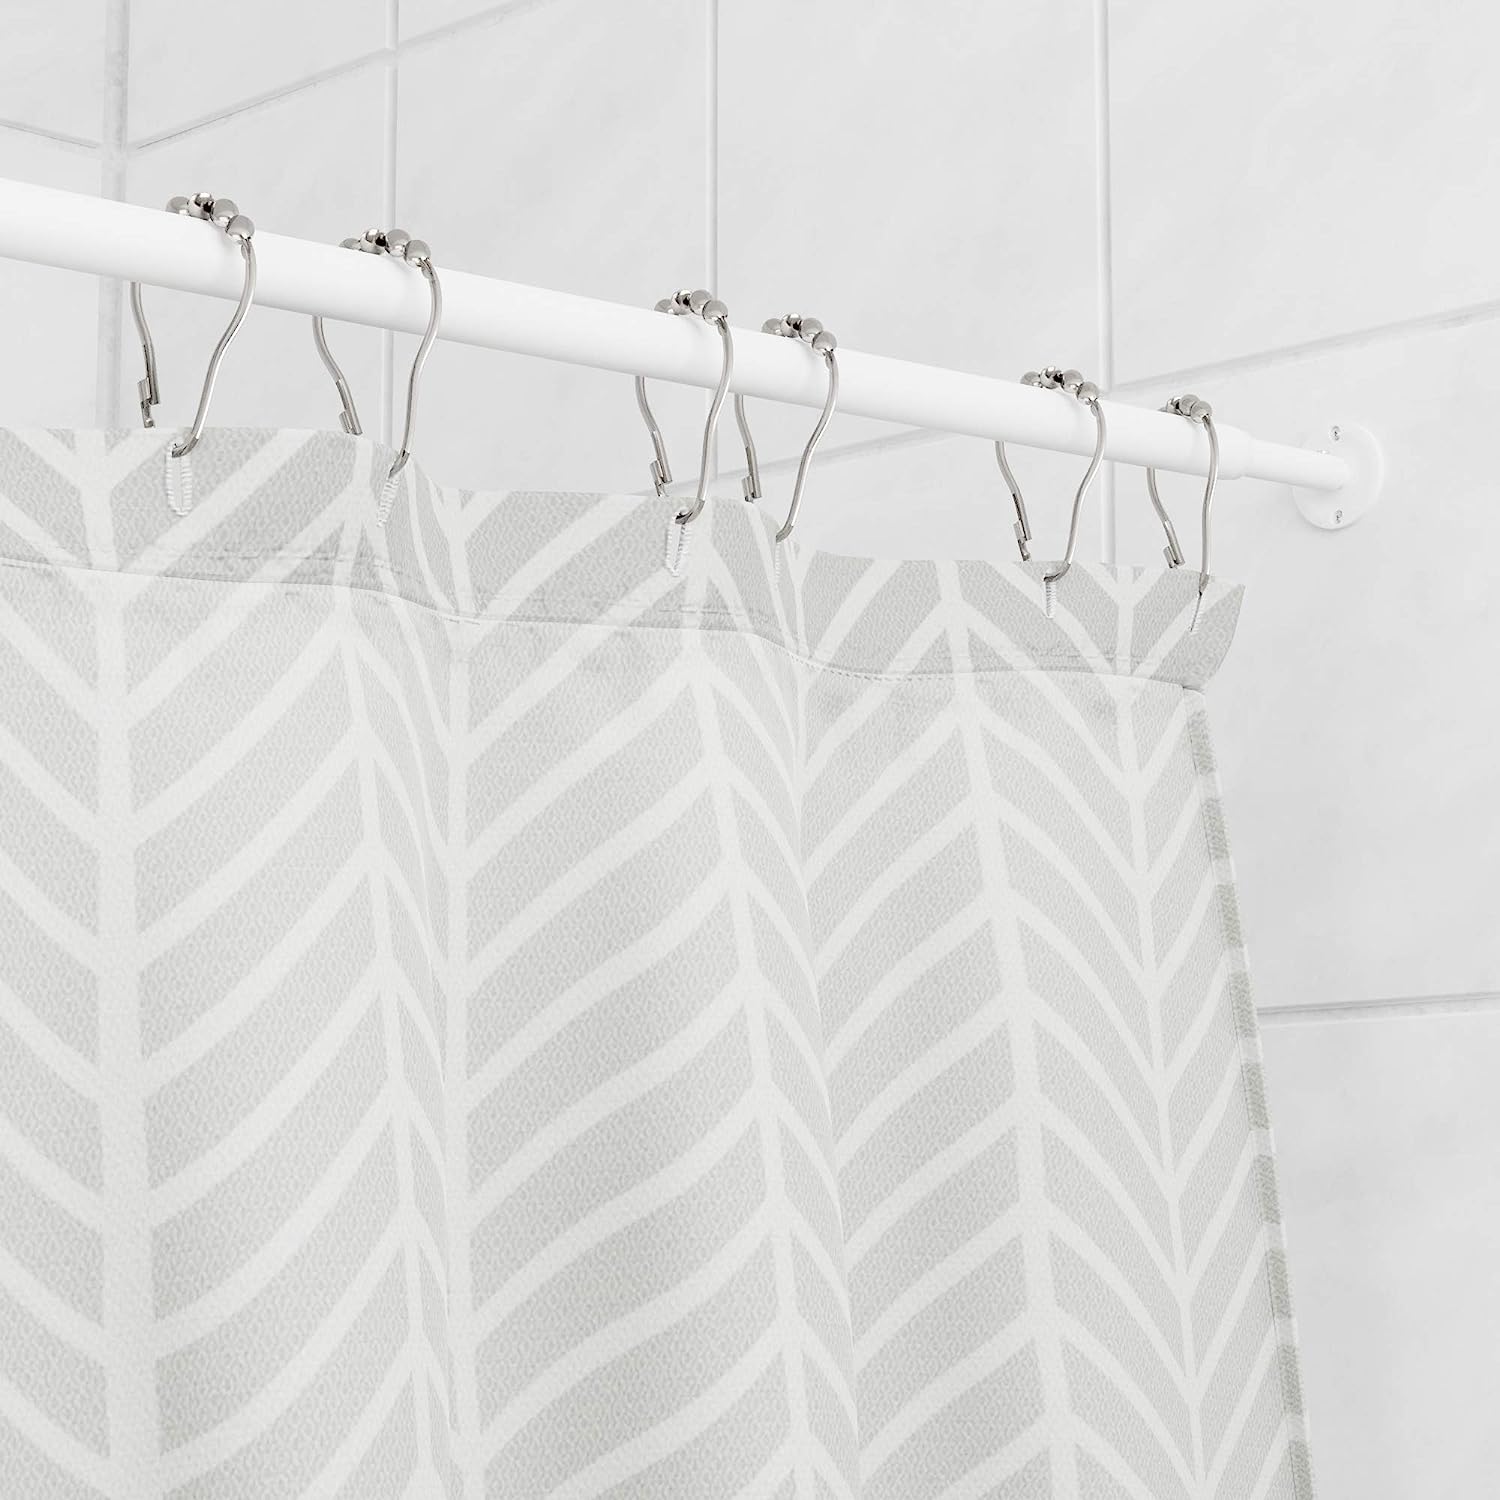 Amazon Basics Extendable Curved Shower Rod